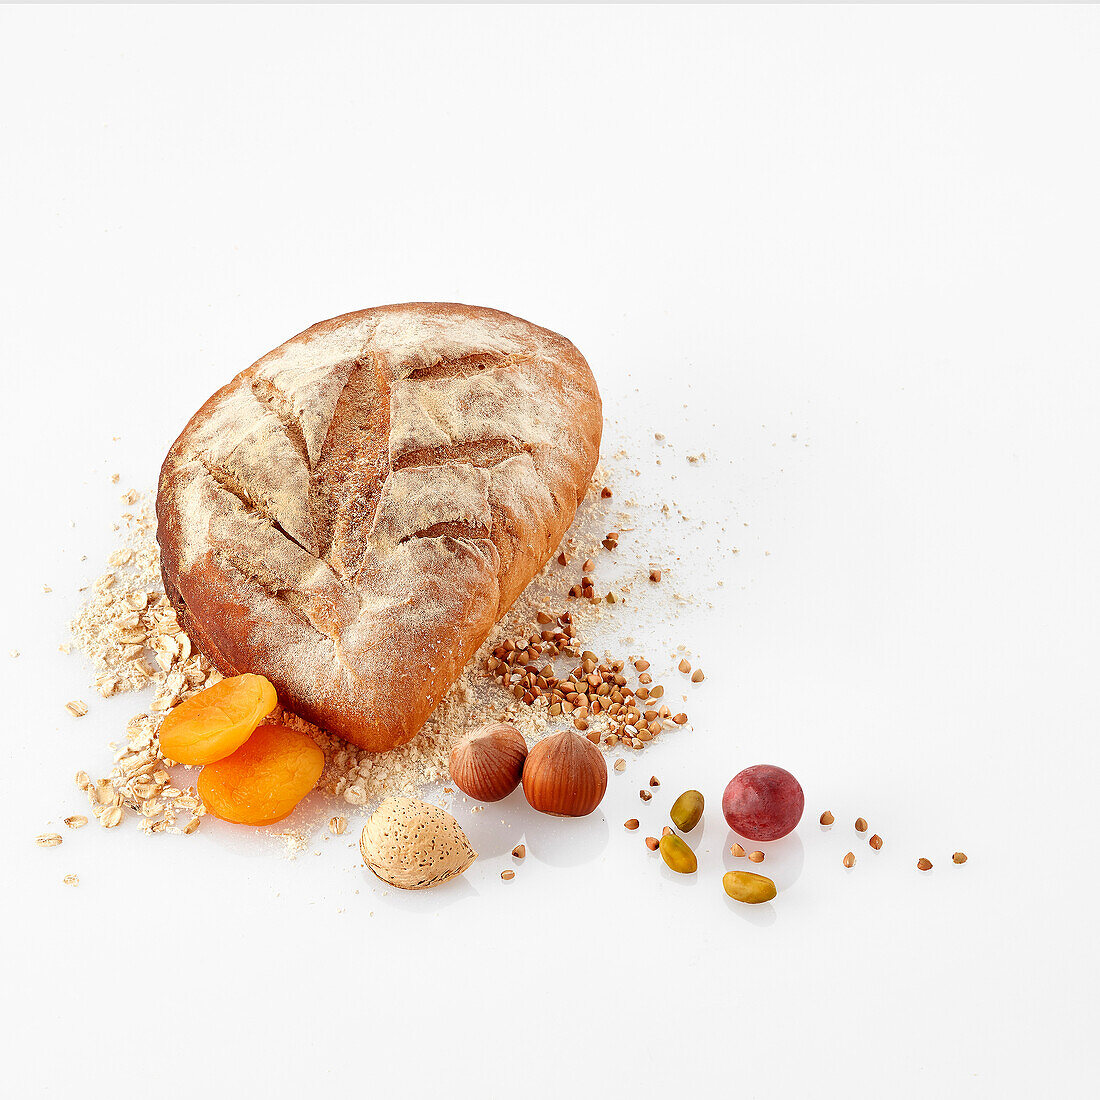 Brot mit verschiedenen Zutaten vor weißem Hintergrund